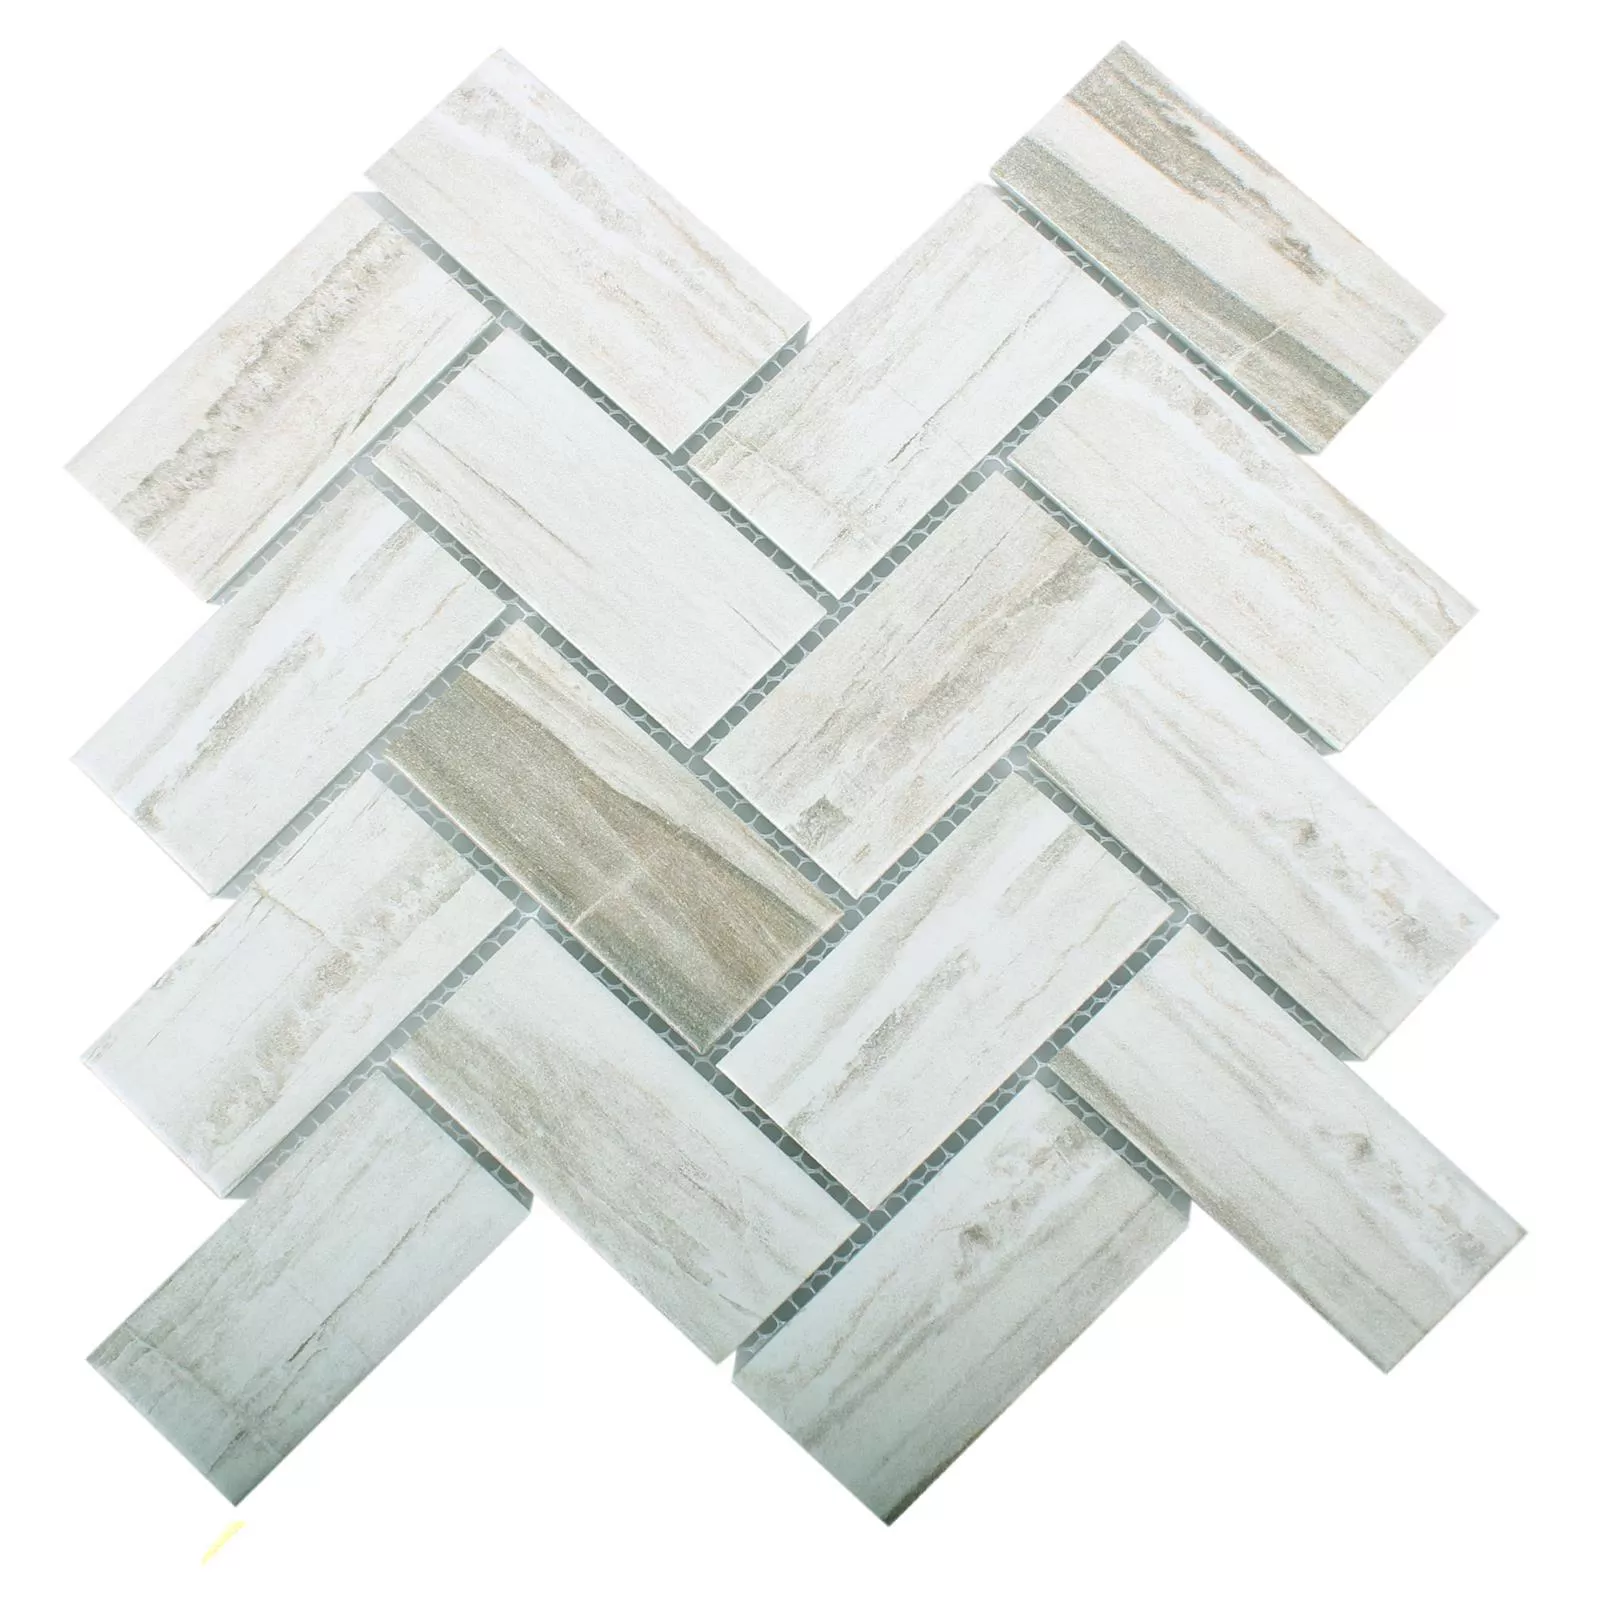 Sample Ceramic Wood Optic Mosaic Tiles Norfolk Fish Bone White